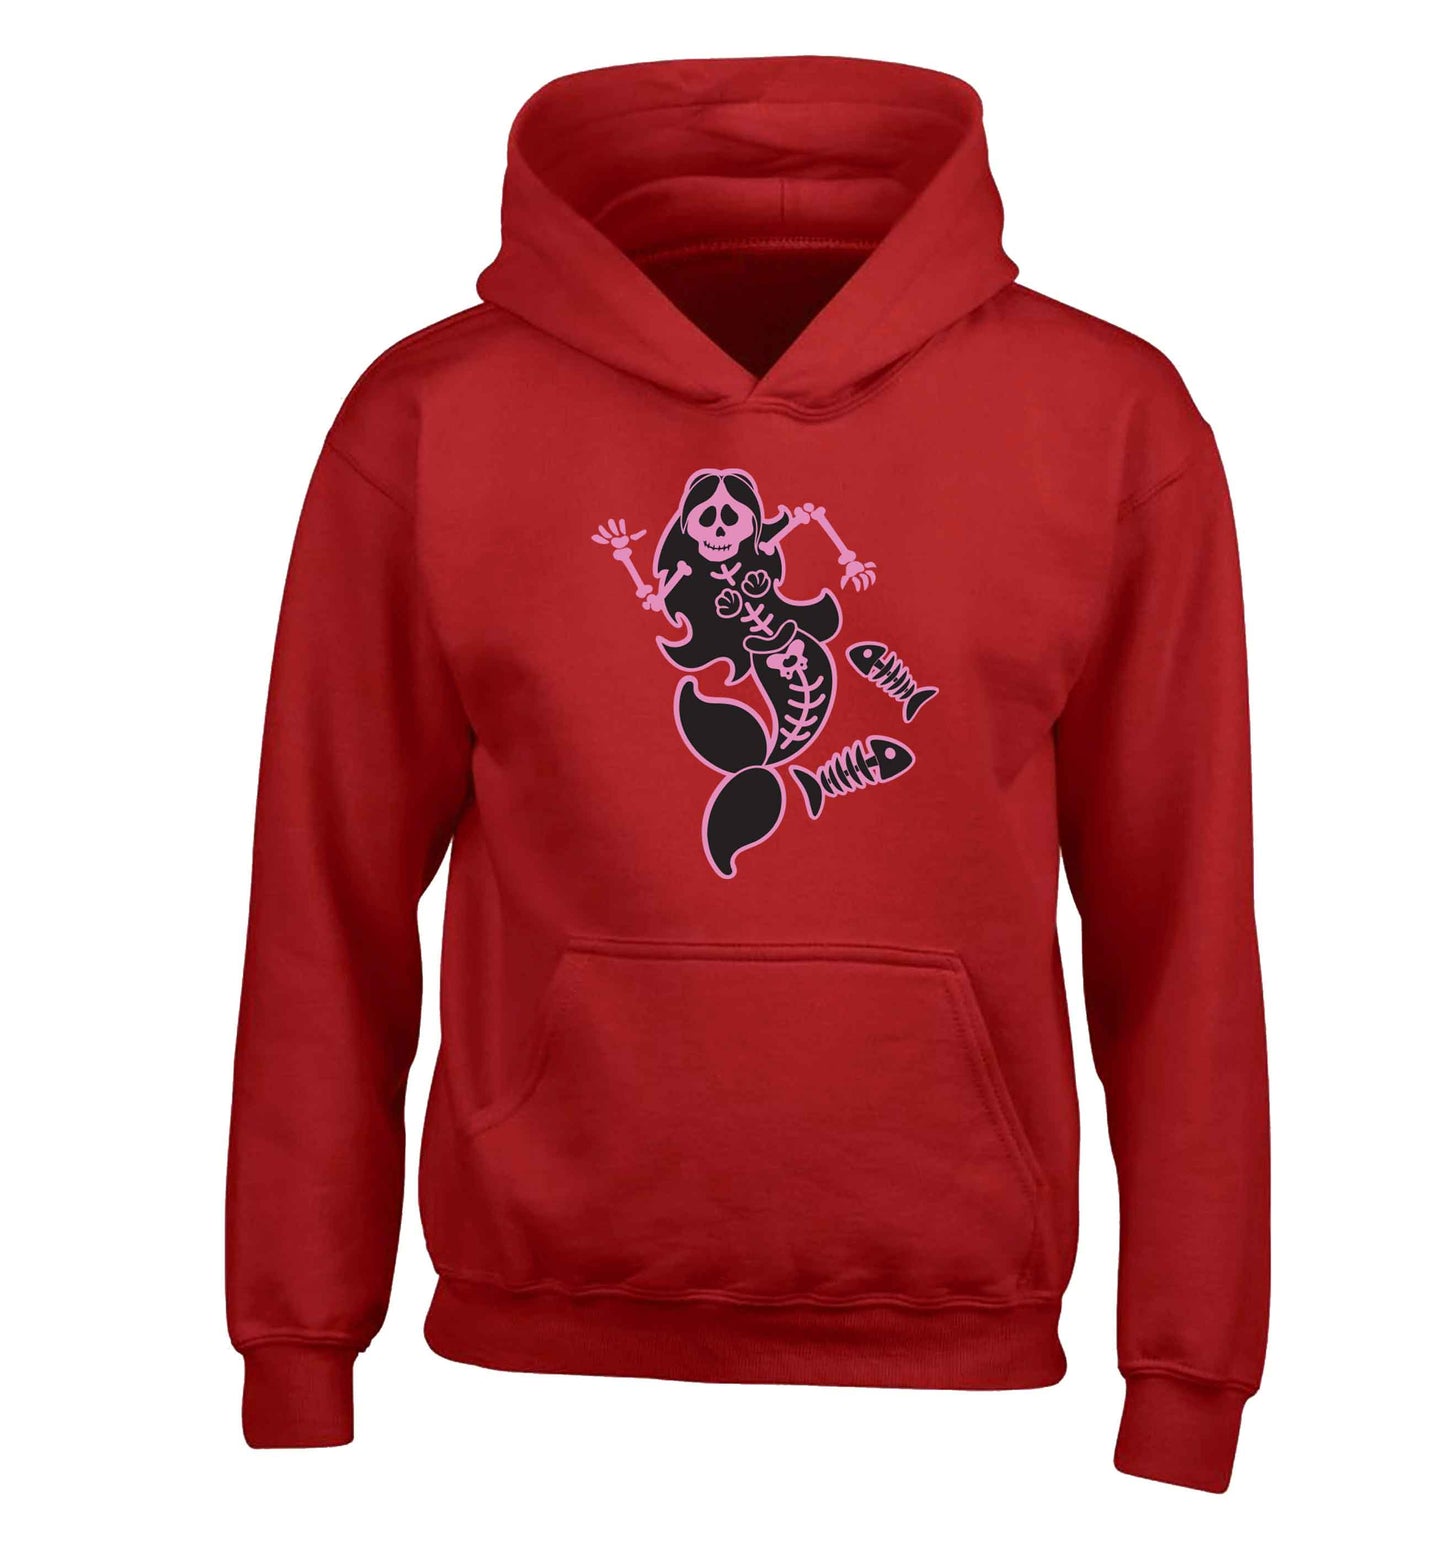 Skeleton mermaid children's red hoodie 12-13 Years